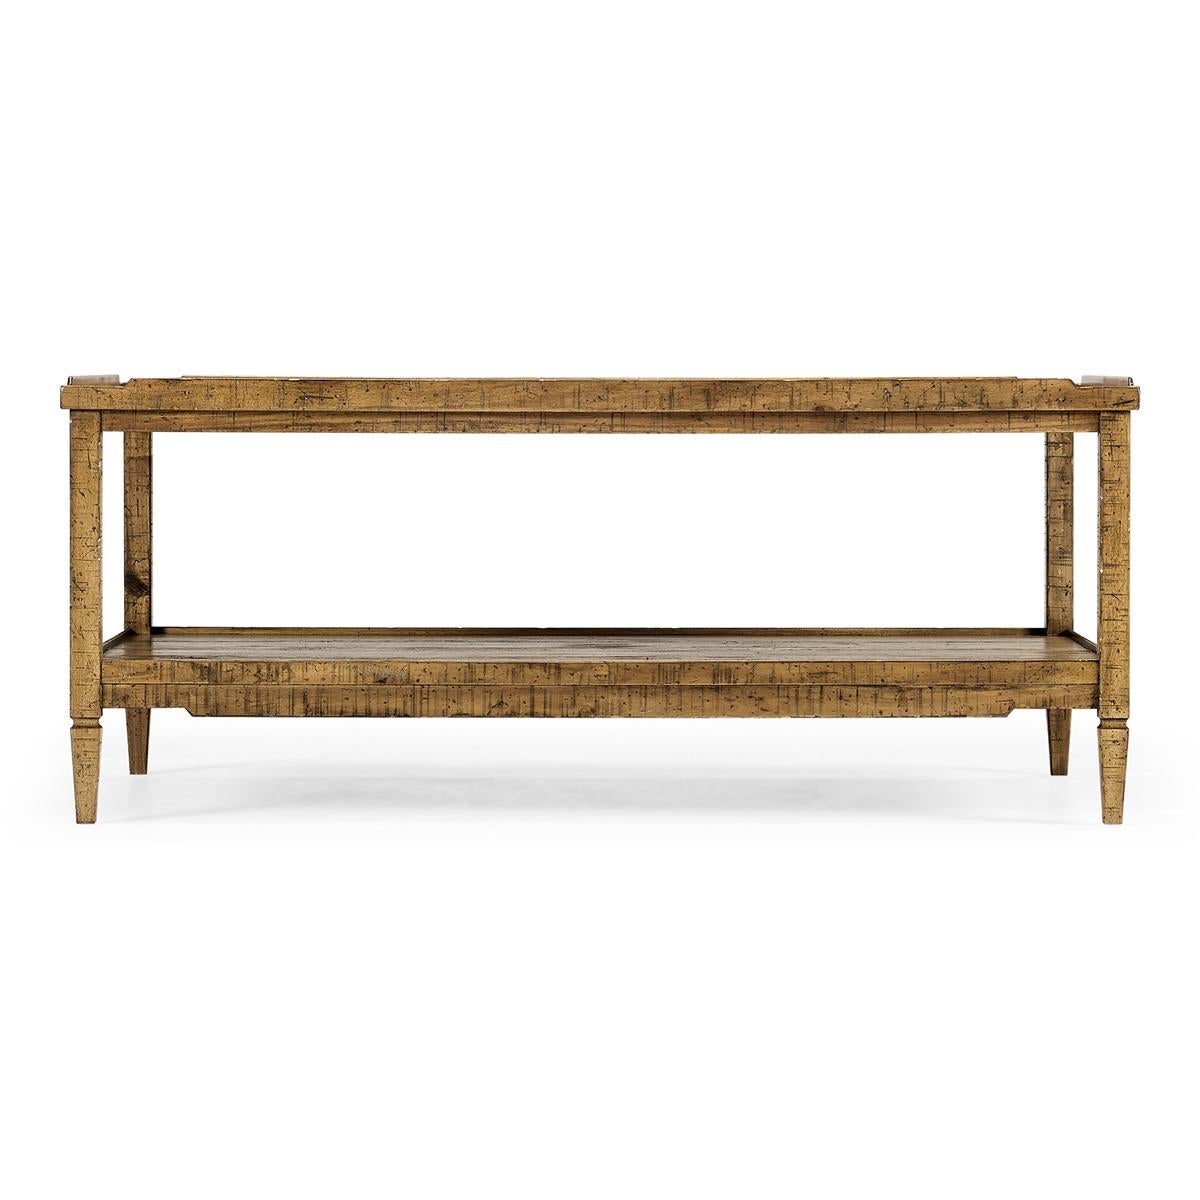 Table basse de style rustique français en finition bois flotté moyen avec une galerie en bois, des pieds fuselés carrés et une étagère inférieure.

Dimensions : 48